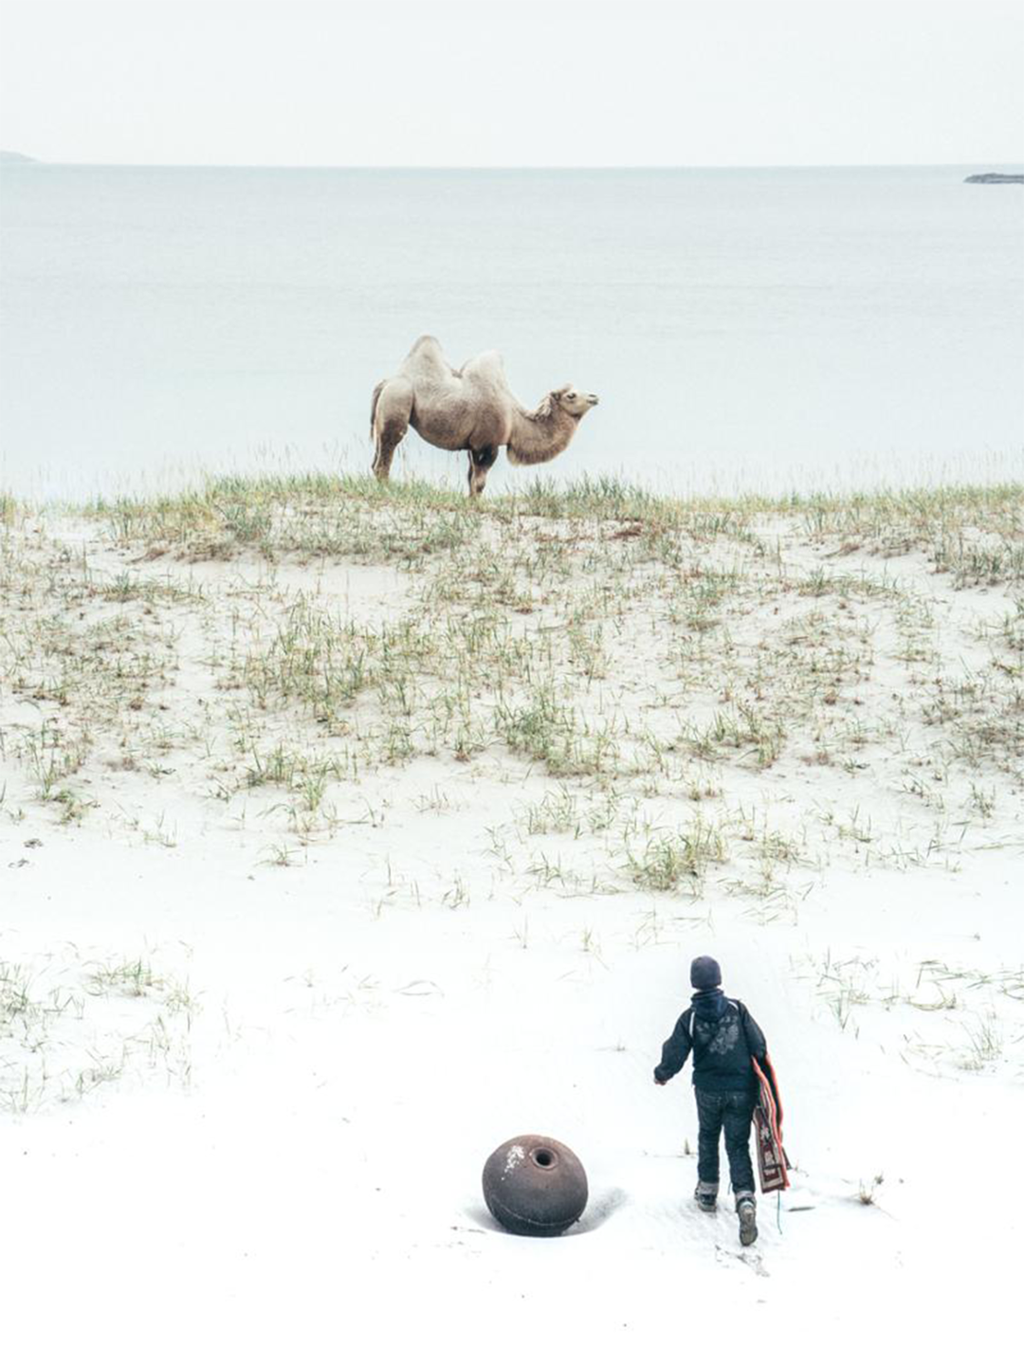 En gutt på vei opp mot en kamel på ei strand. Kamelen står og stirrer utover landskapet, og gutten nærmer seg dyret. Foto.